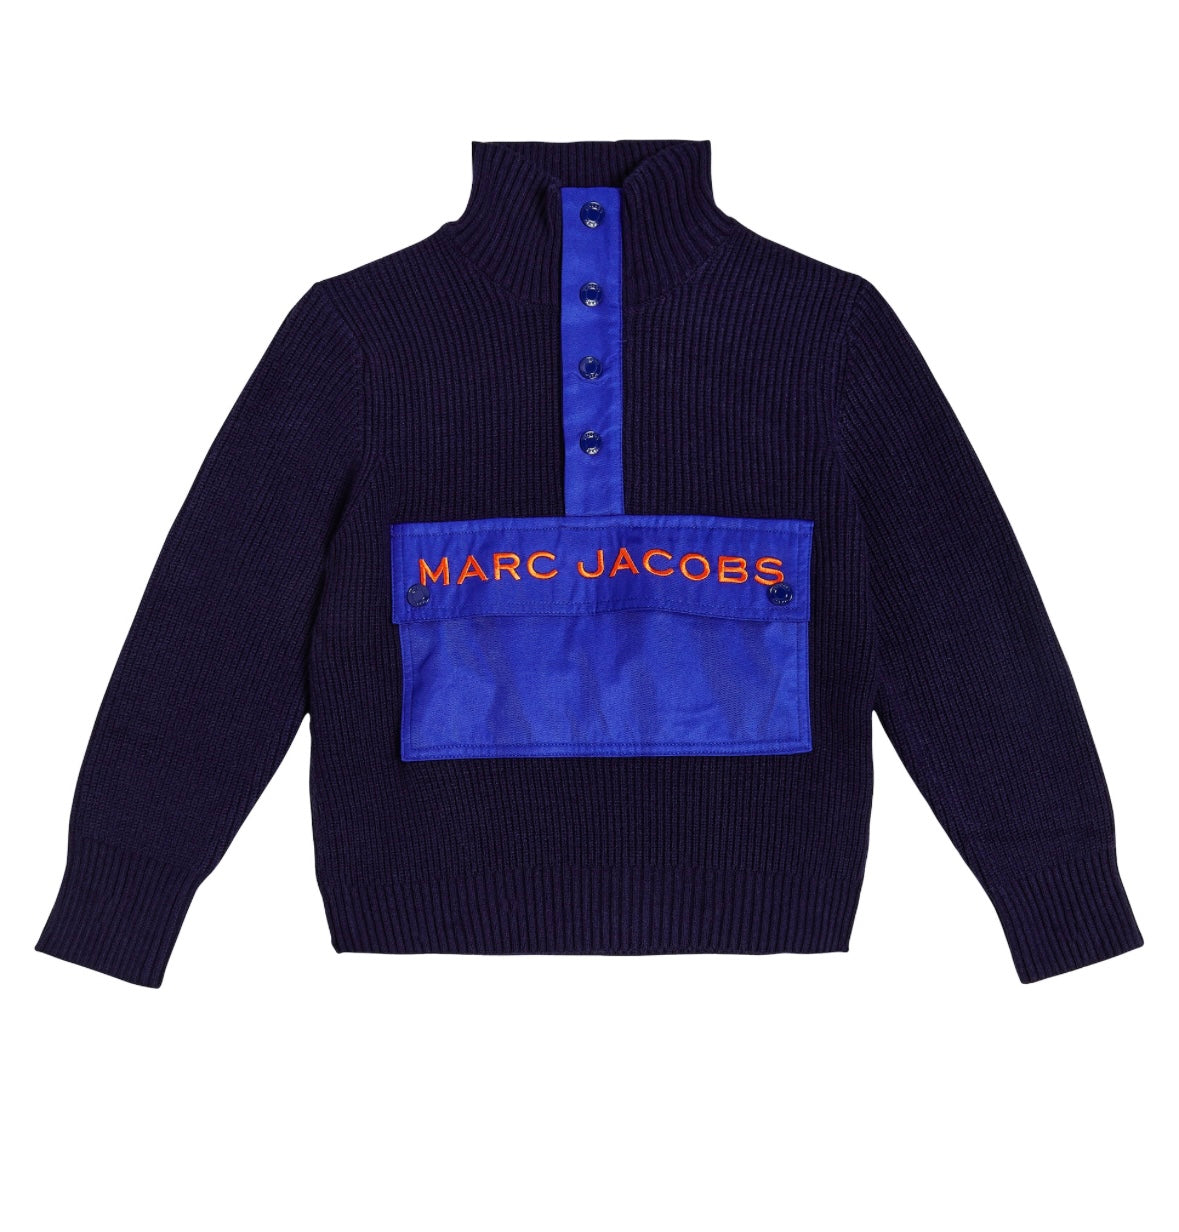 Marc Jacobs Kids button placket knit top